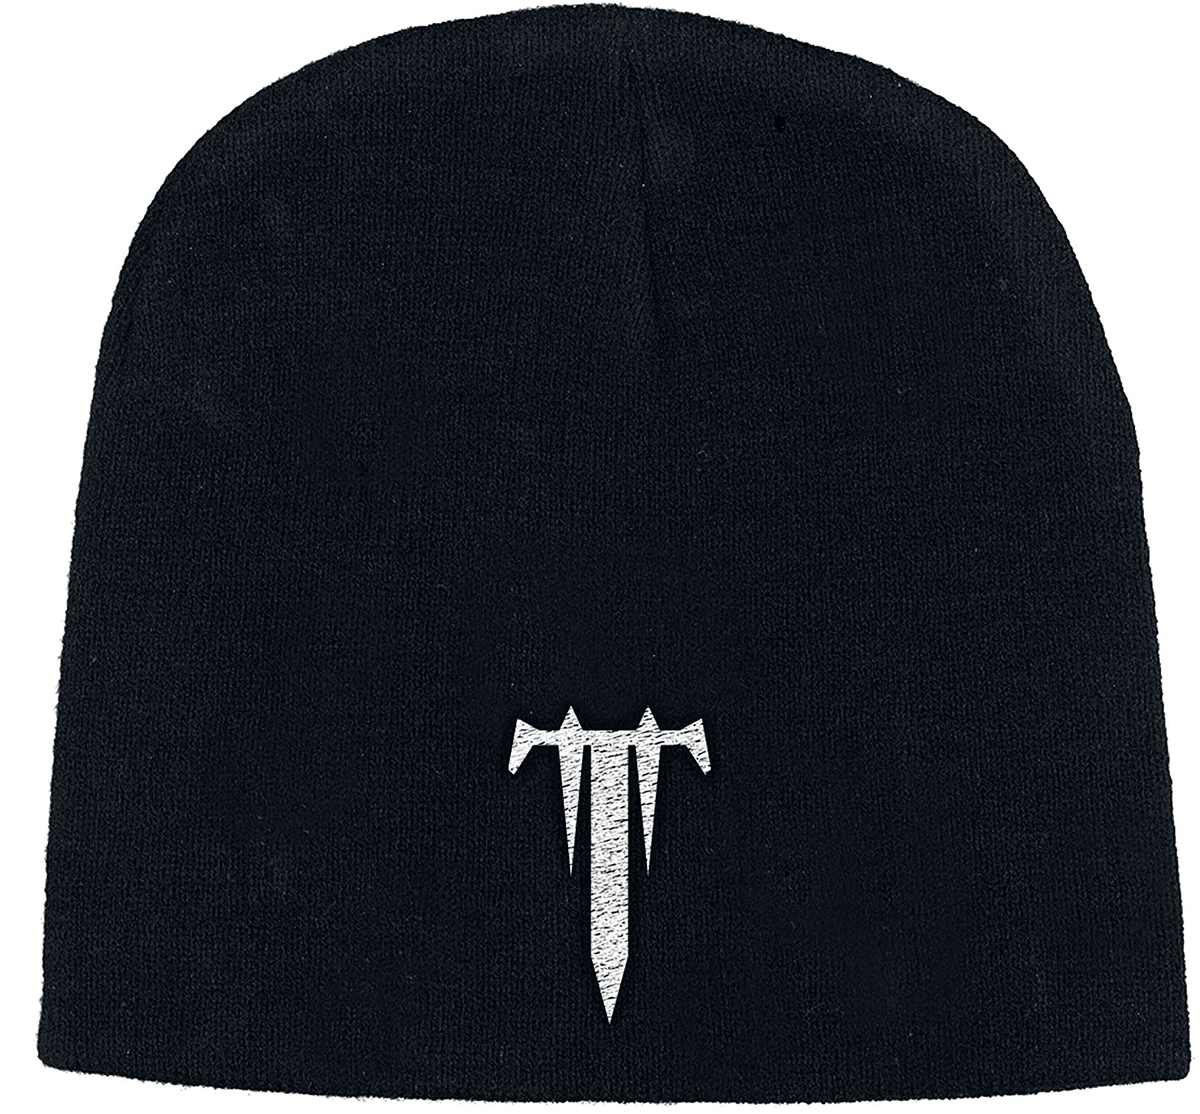 Trivium - T - Mütze - schwarz